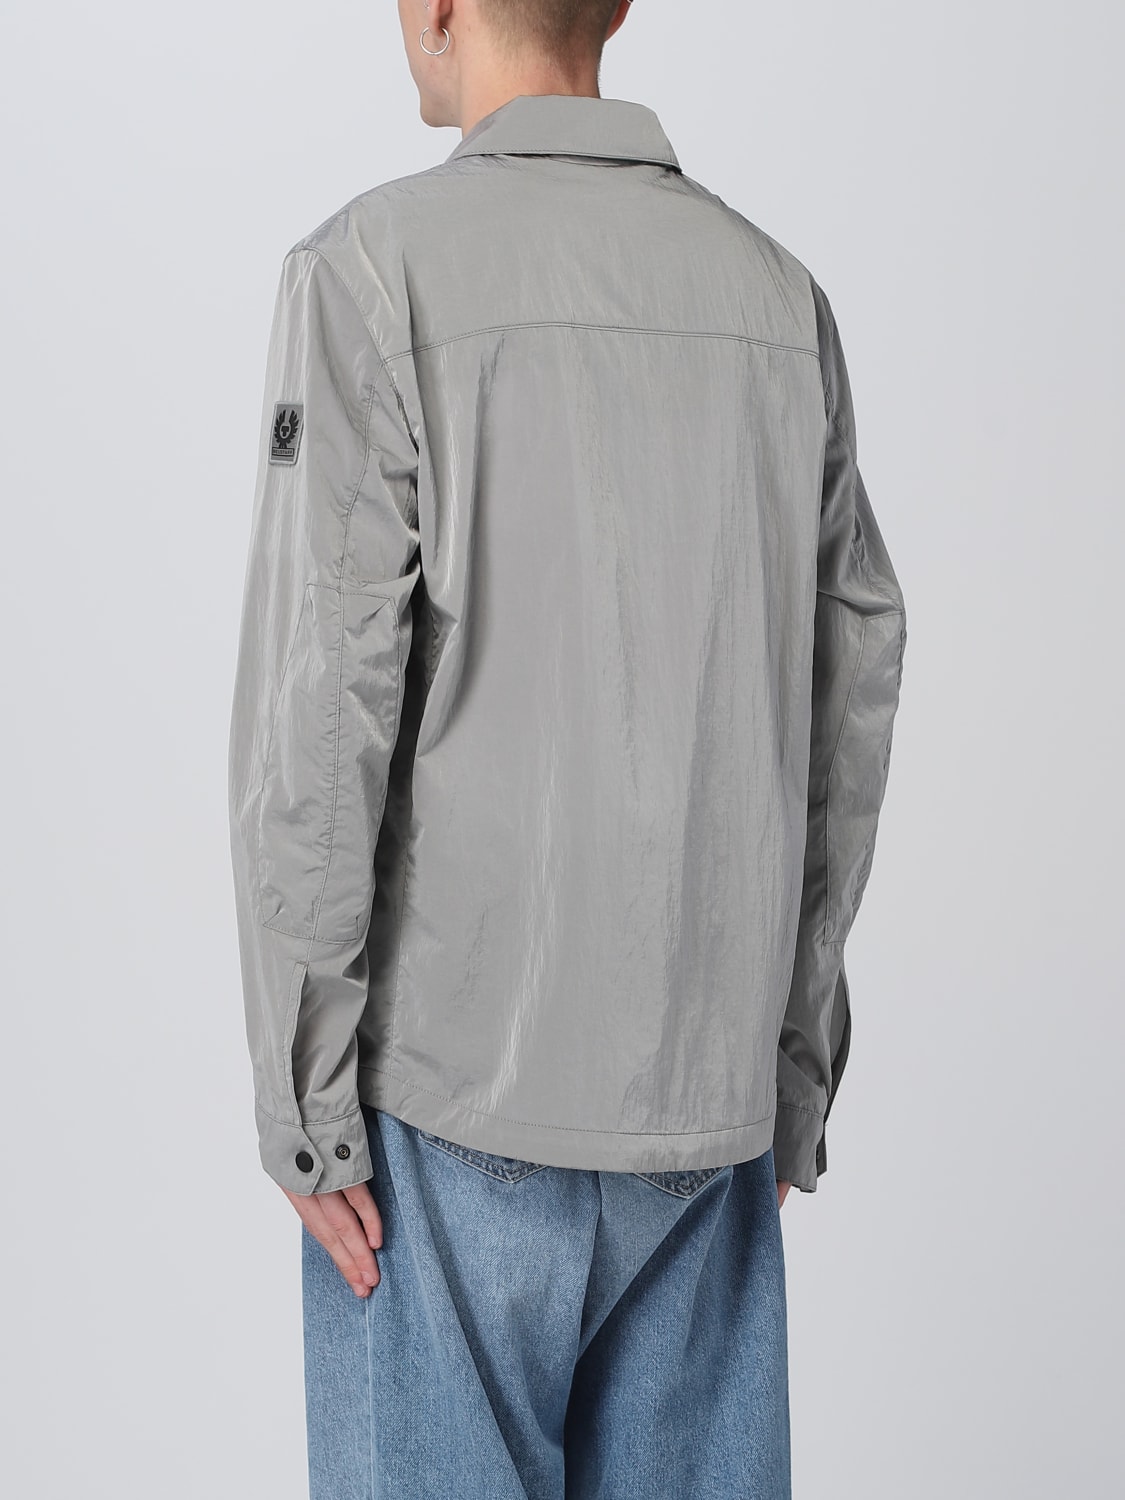 Belstaff Outlet: jacket for men - Grey  Belstaff jacket 103986 online at